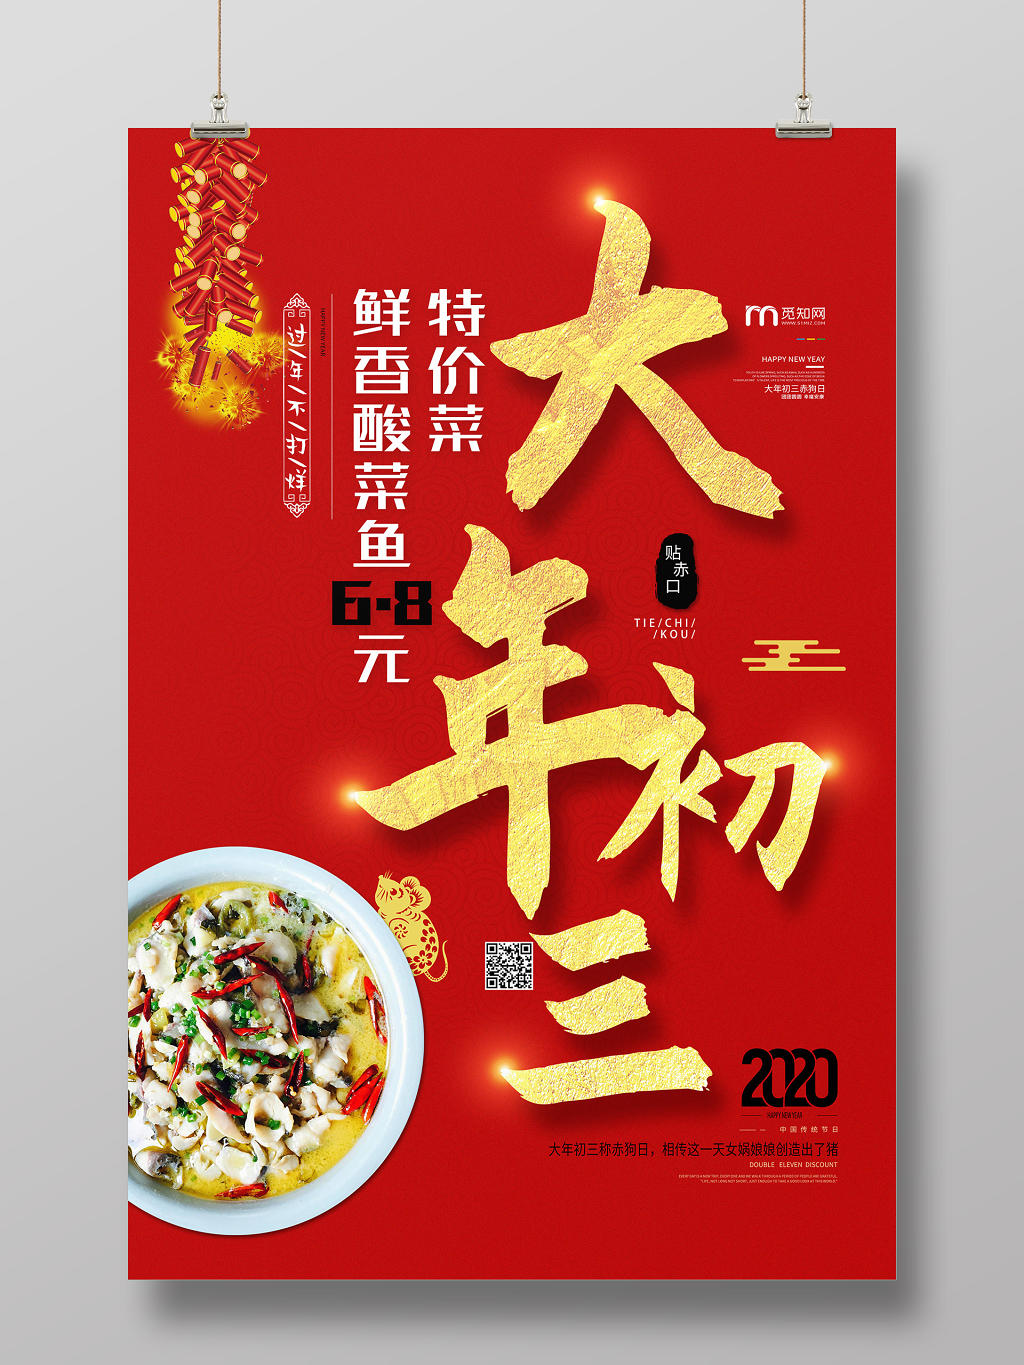 春节习俗红色大气春节大年初三特色菜宣传海报初一至初七系列图